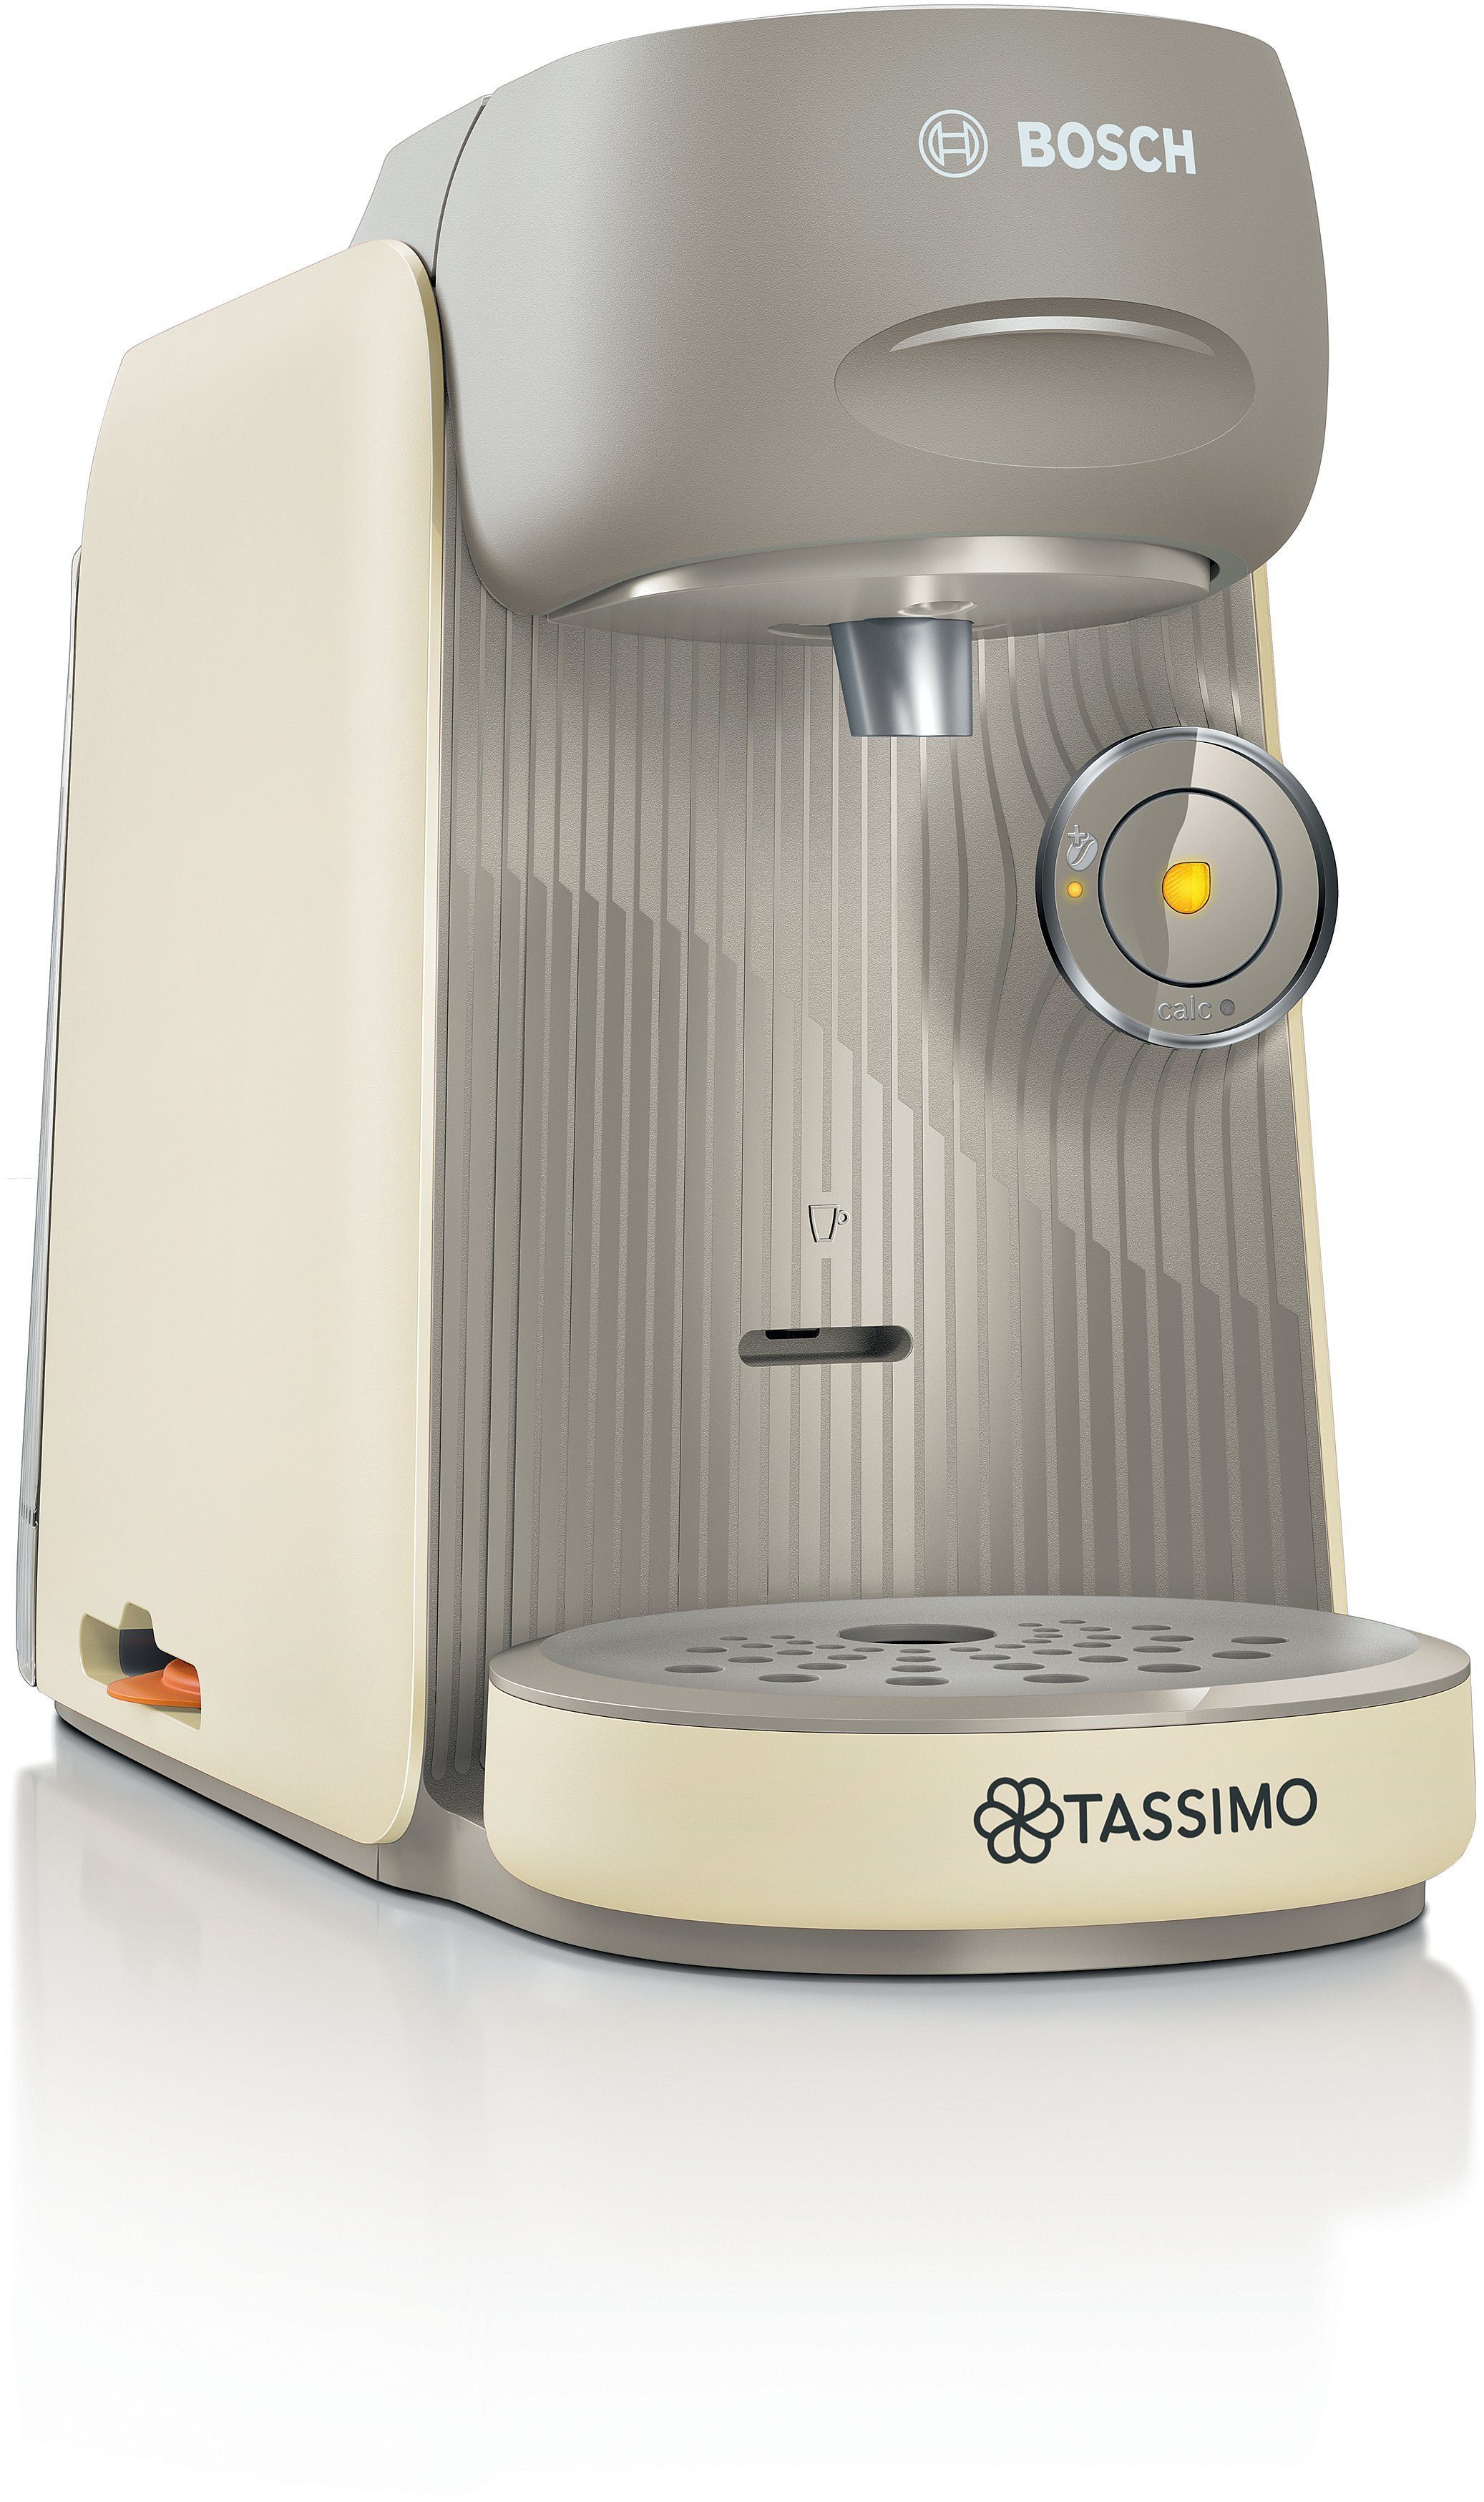 TASSIMO Kapselmaschine finesse friendly TAS162E, intensiverer Kaffee auf Kopfdruck, One-Touch Bedienung, über 70 Getränke, platzsparend, creme